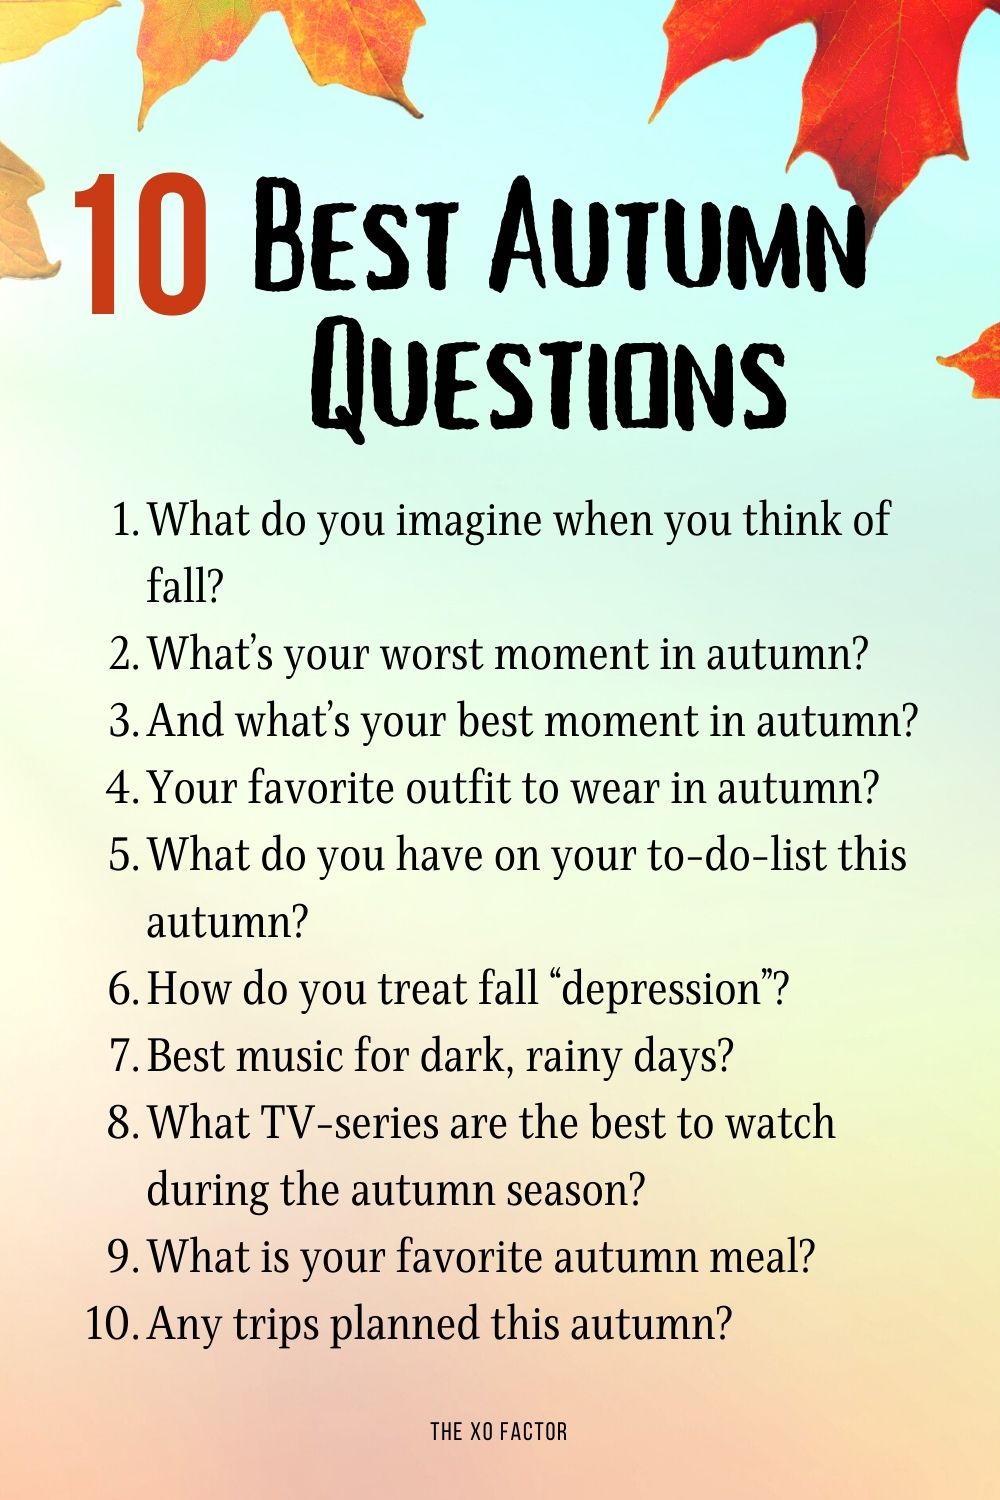 10 Best Autumn Questions